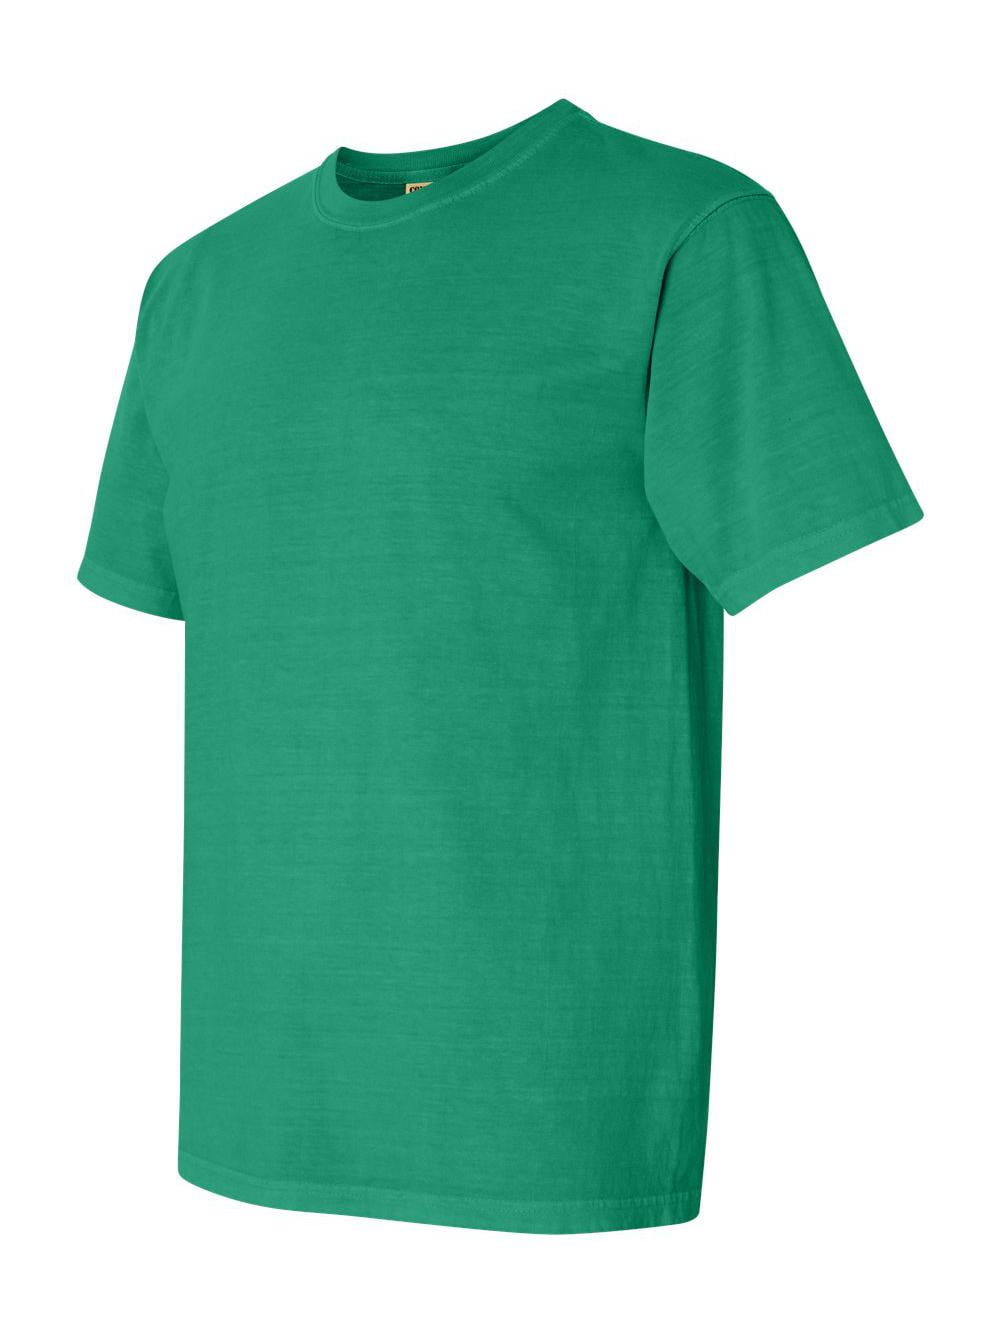 Comfort Colors - Garment-Dyed Heavyweight T-Shirt - 1717 - Grass